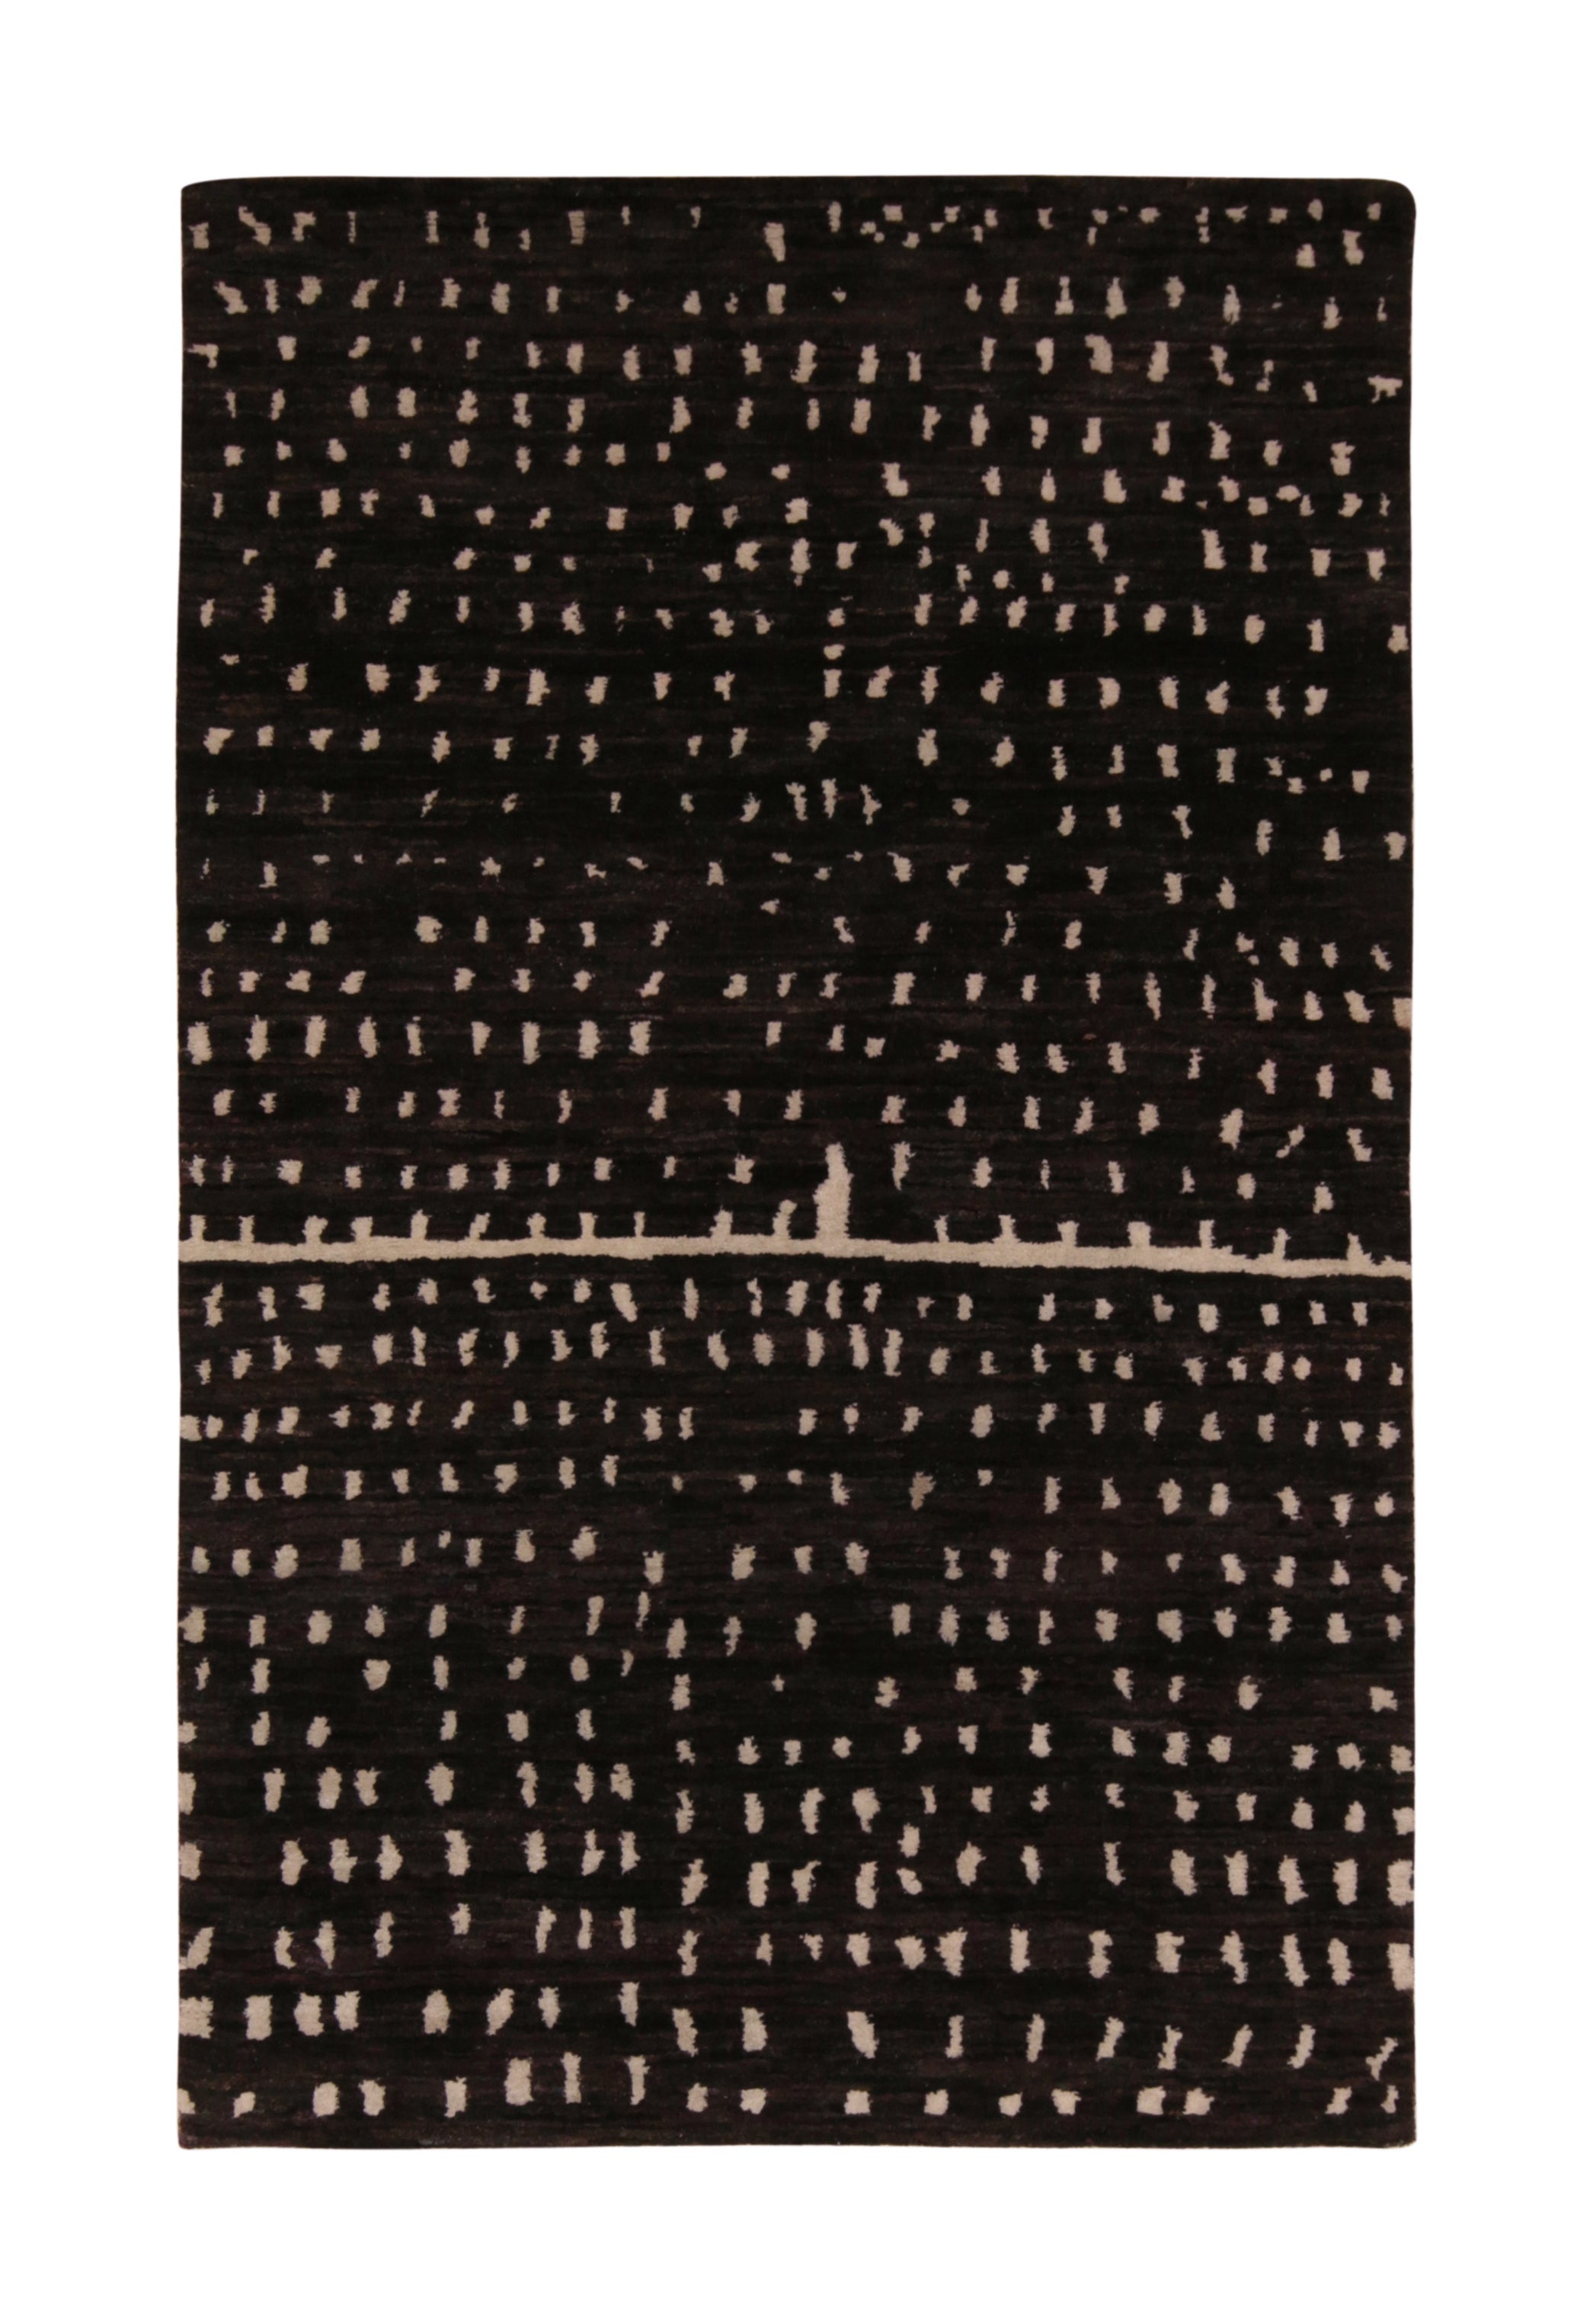 Moderner Teppich & Kelim-Teppich mit schwarz-weißen Punktenmuster